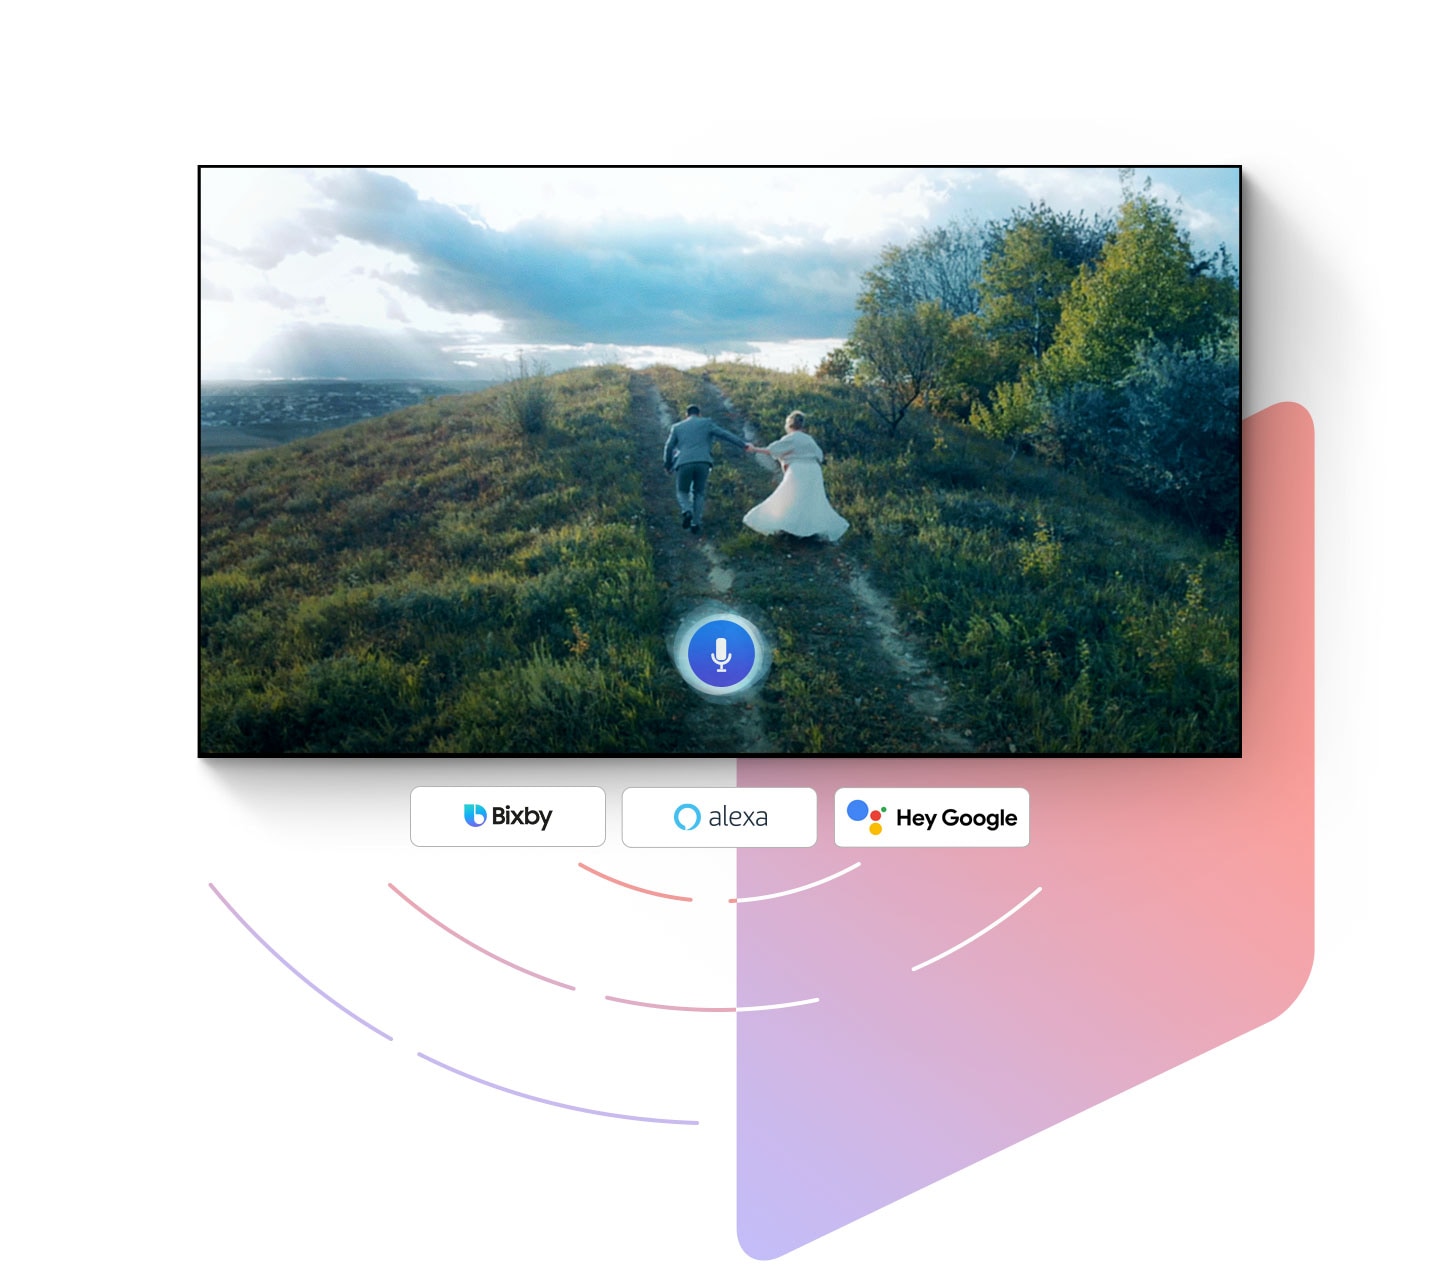 Biểu tượng kích hoạt thu âm xuất hiện khi bạn đang tương tác với trợ lý giọng nói trên Samsung Smart TV trên màn hình TV. Bên dưới TV, có một hàng biểu trưng cho Bixby, Alexa và Google Assistant, các trợ lý giọng nói có sẵn để sử dụng qua Samsung Smart TV.